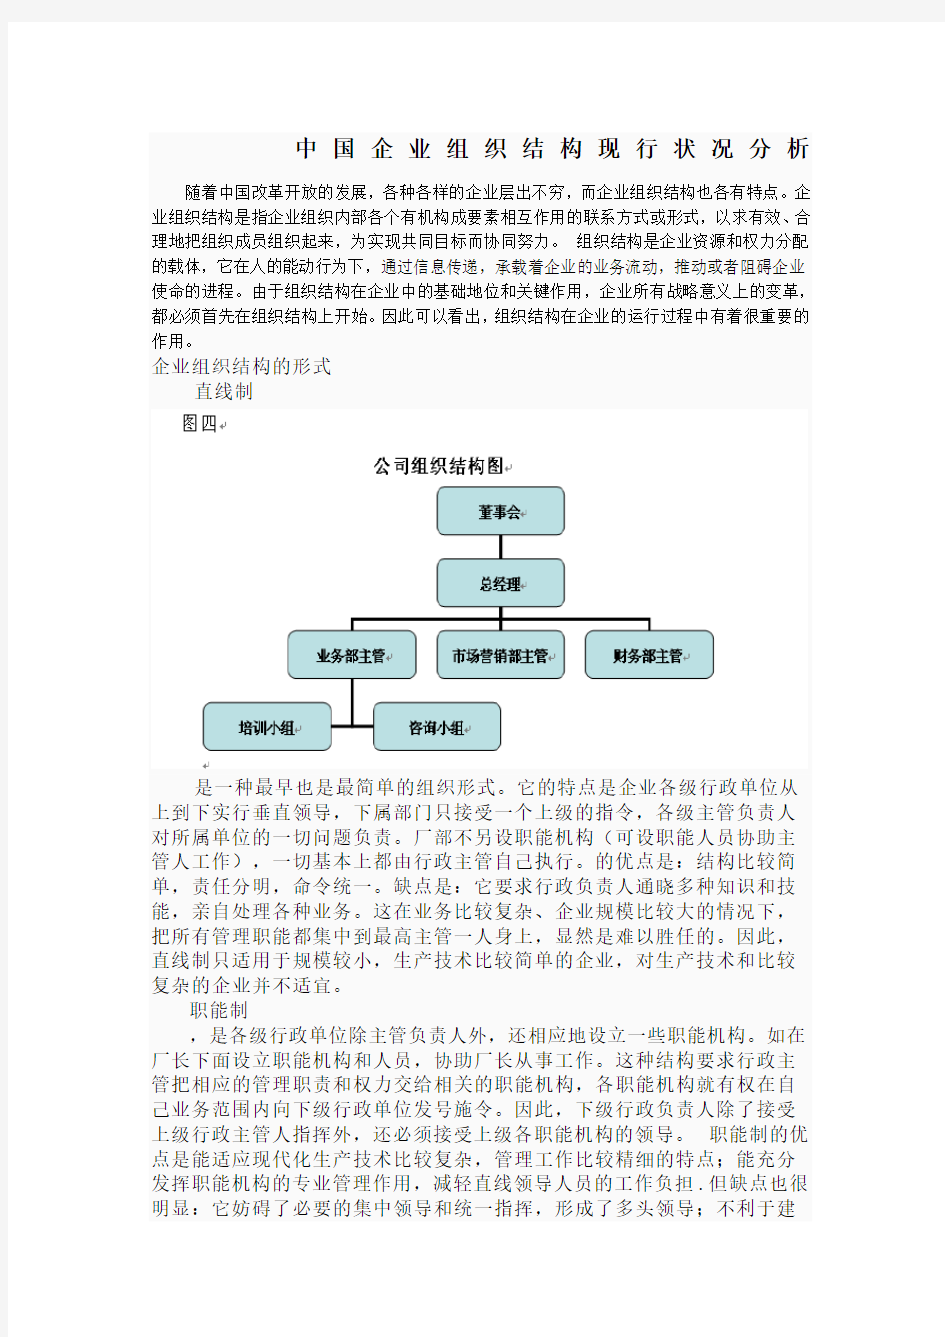 中国企业组织结构现行状况分析